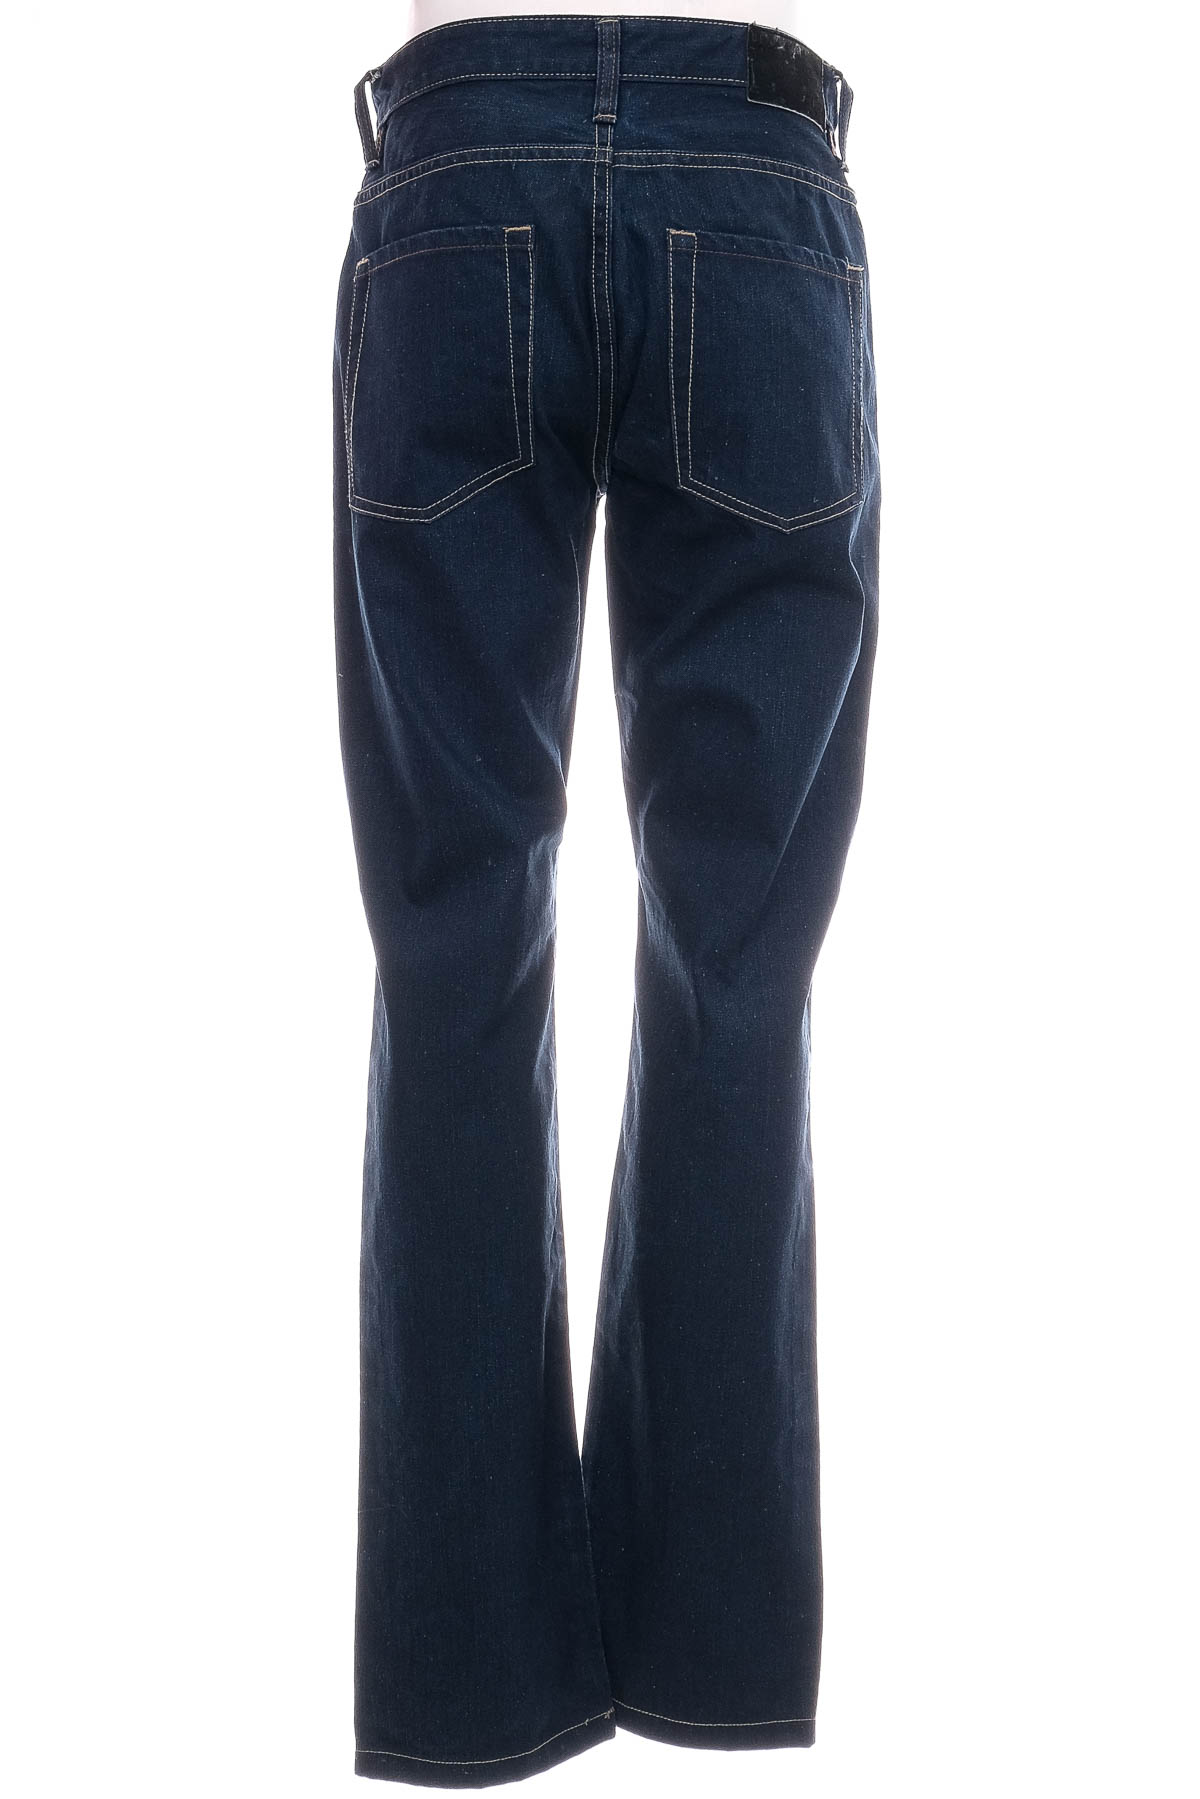 Jeans pentru bărbăți - Takko Fashion - 1